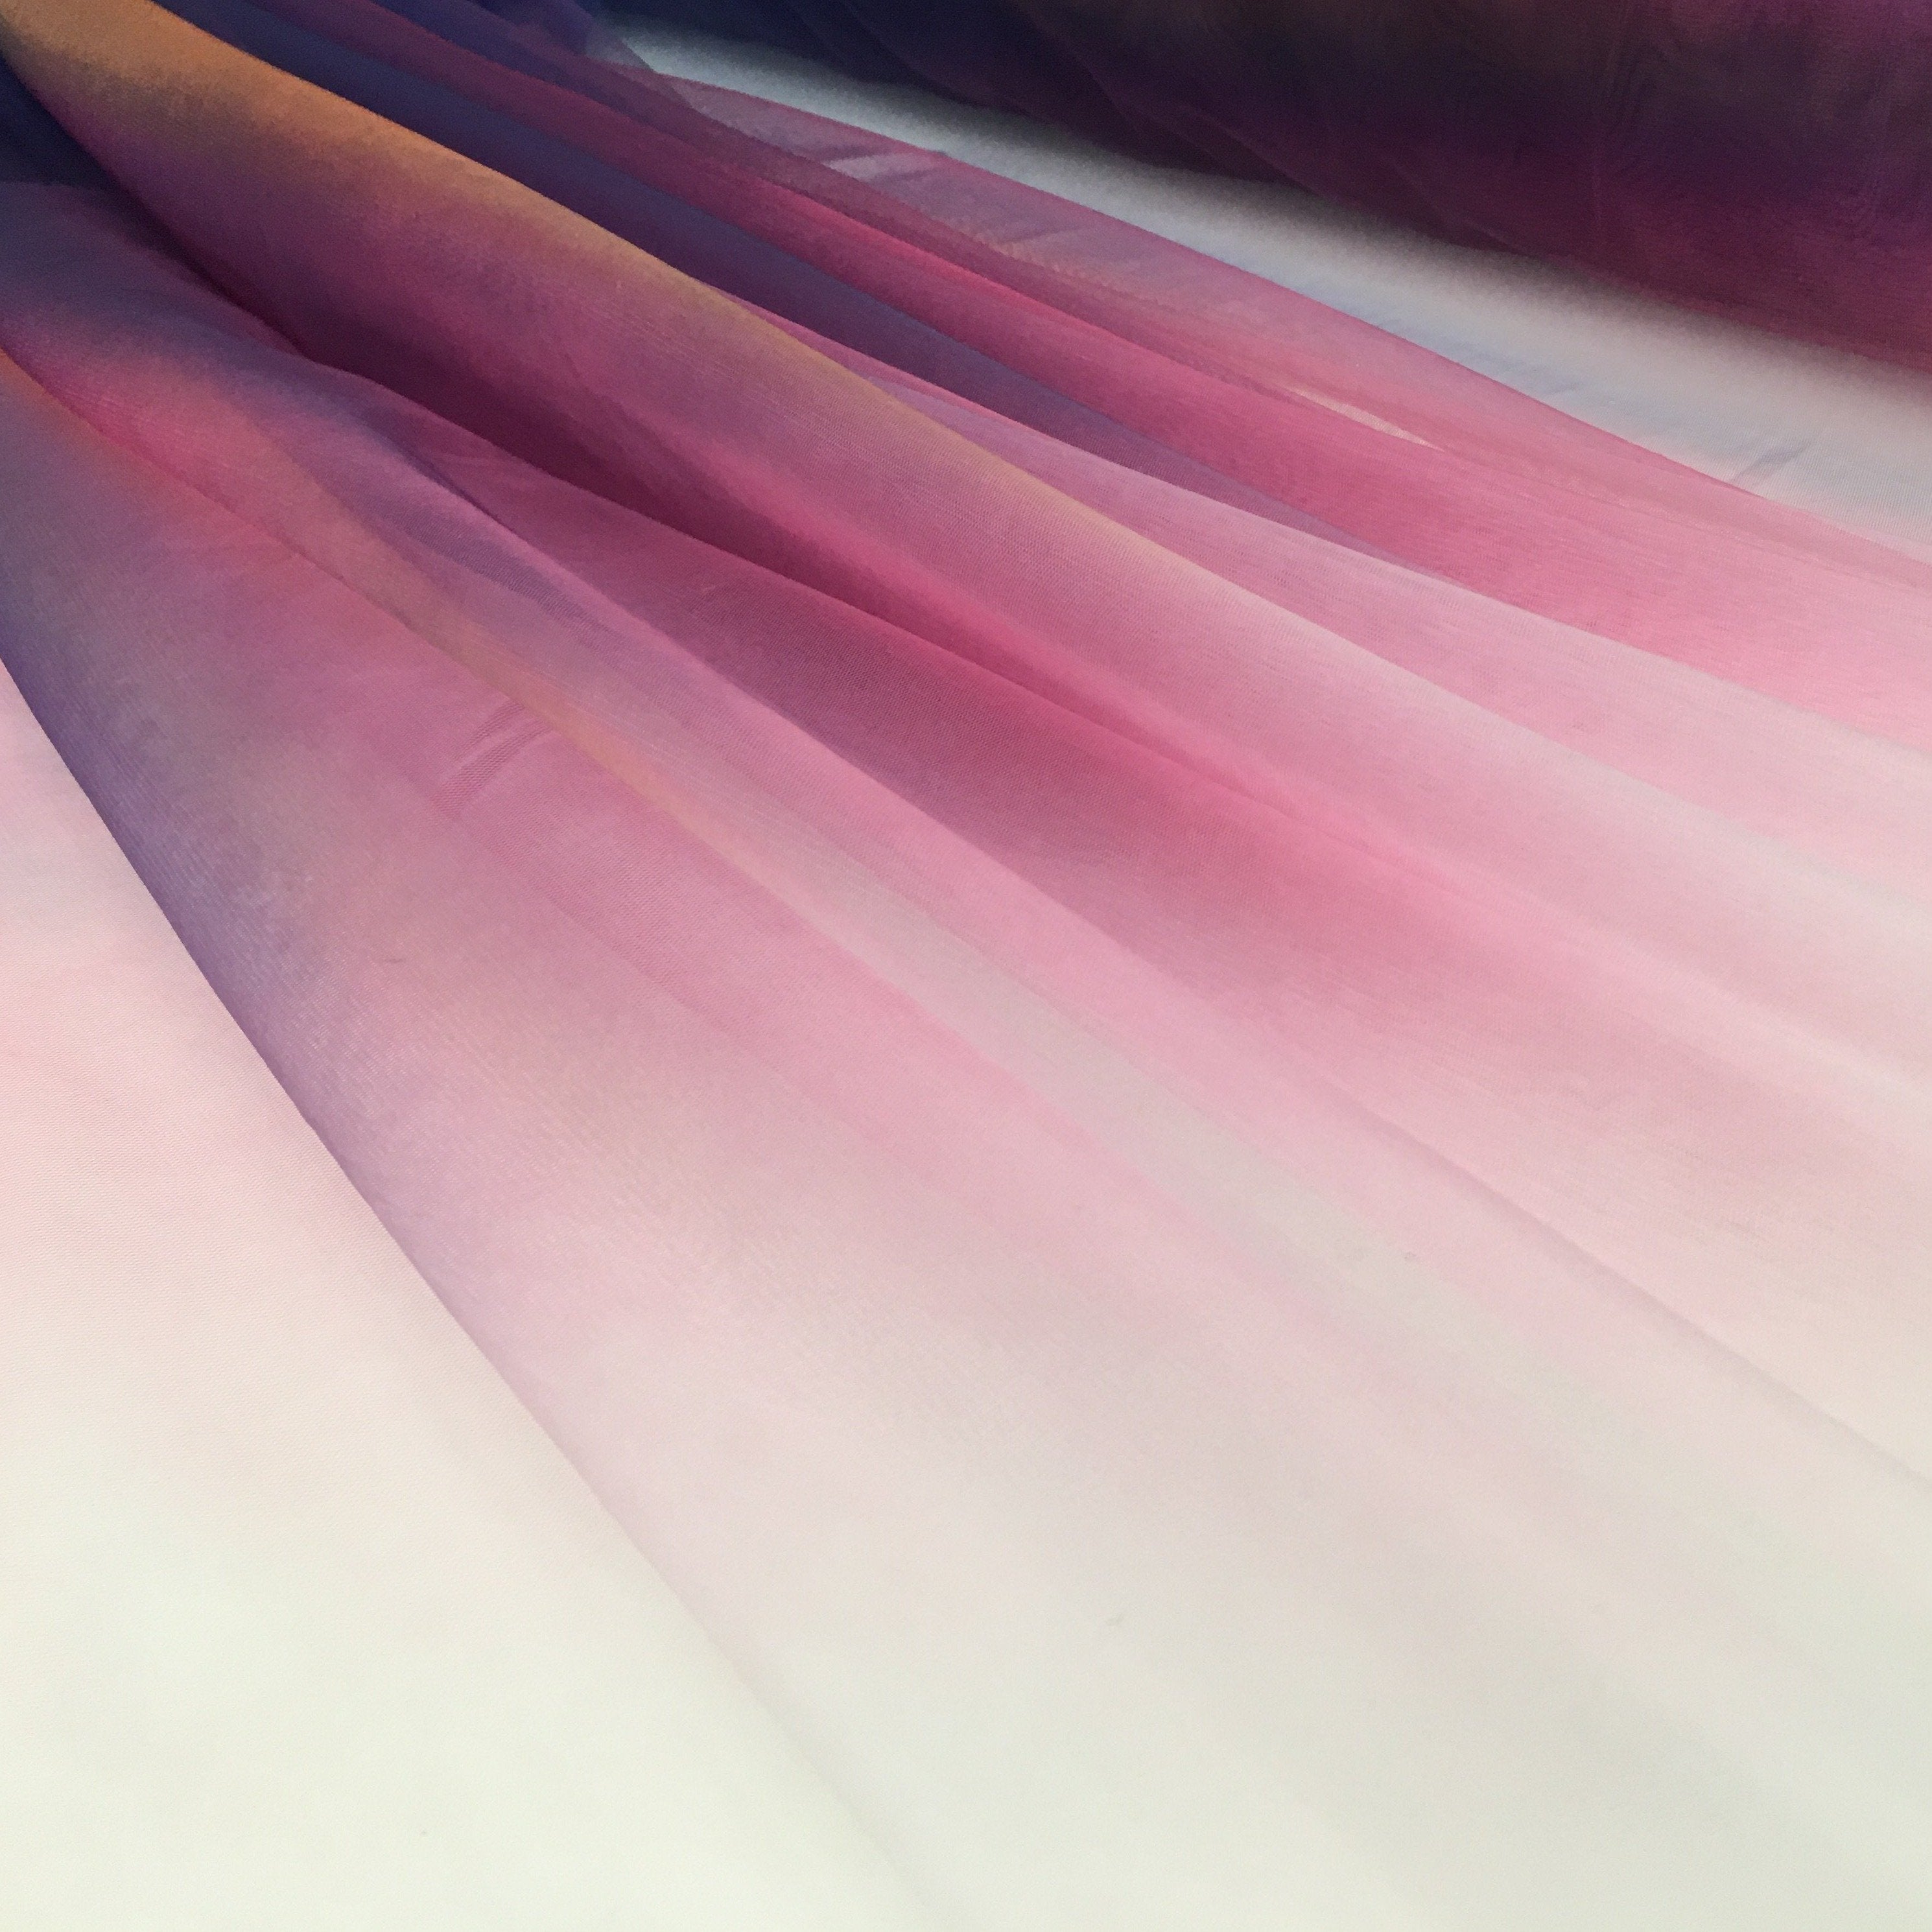 Gökkuşağı Tasarımlı Yumuşak Ombre Mikro Örgü Tül Kumaş | Burç Kumaş